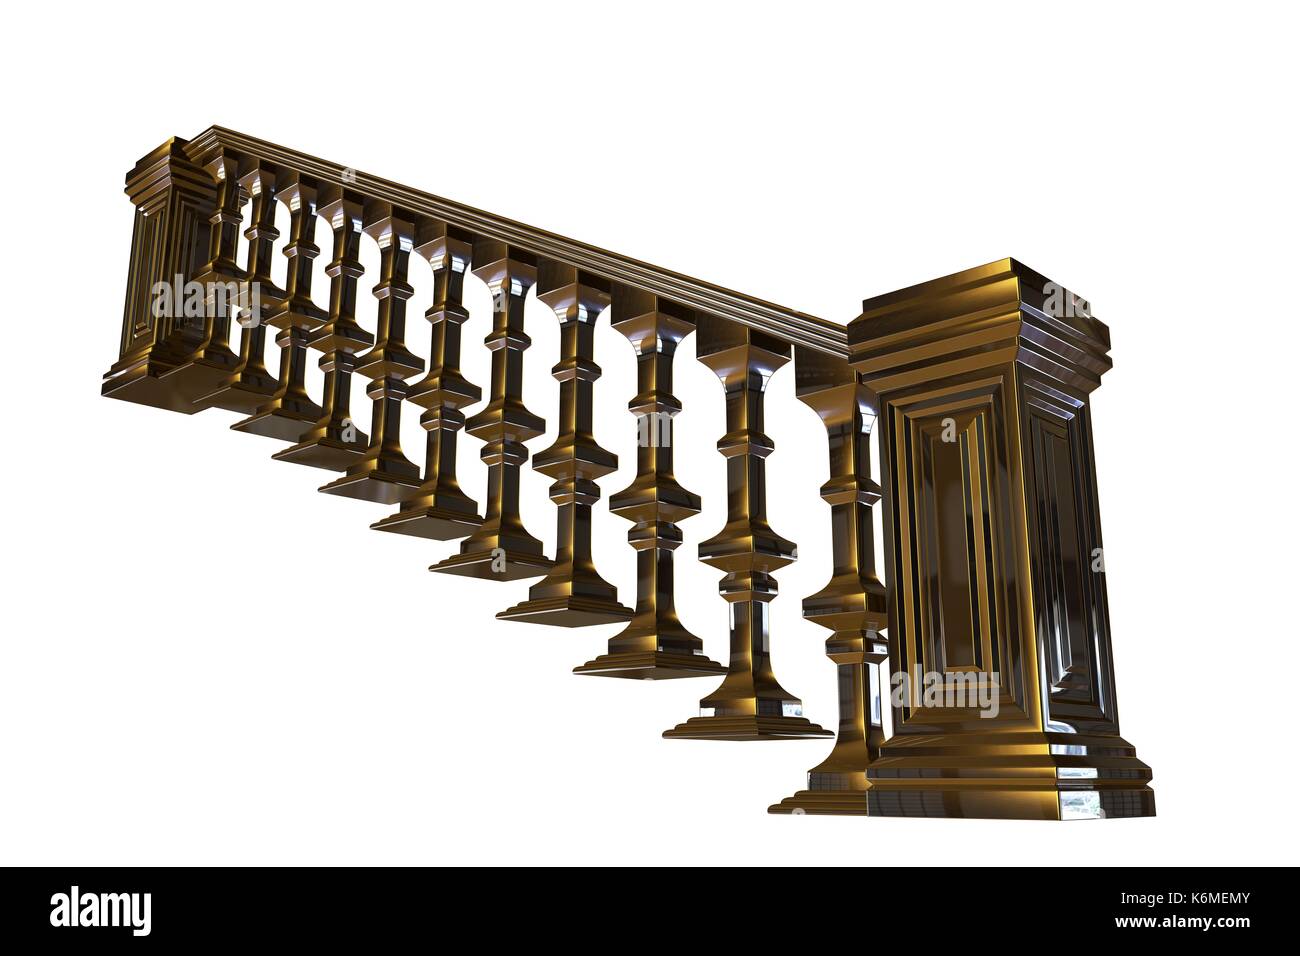 Cầu thang và lan can vàng là một kiệt tác trong thiết kế nội thất và kiến trúc. Hãy tìm hiểu và khám phá những hình ảnh đẹp mắt của cầu thang và lan can vàng này để thấy được sự ấn tượng của chúng.